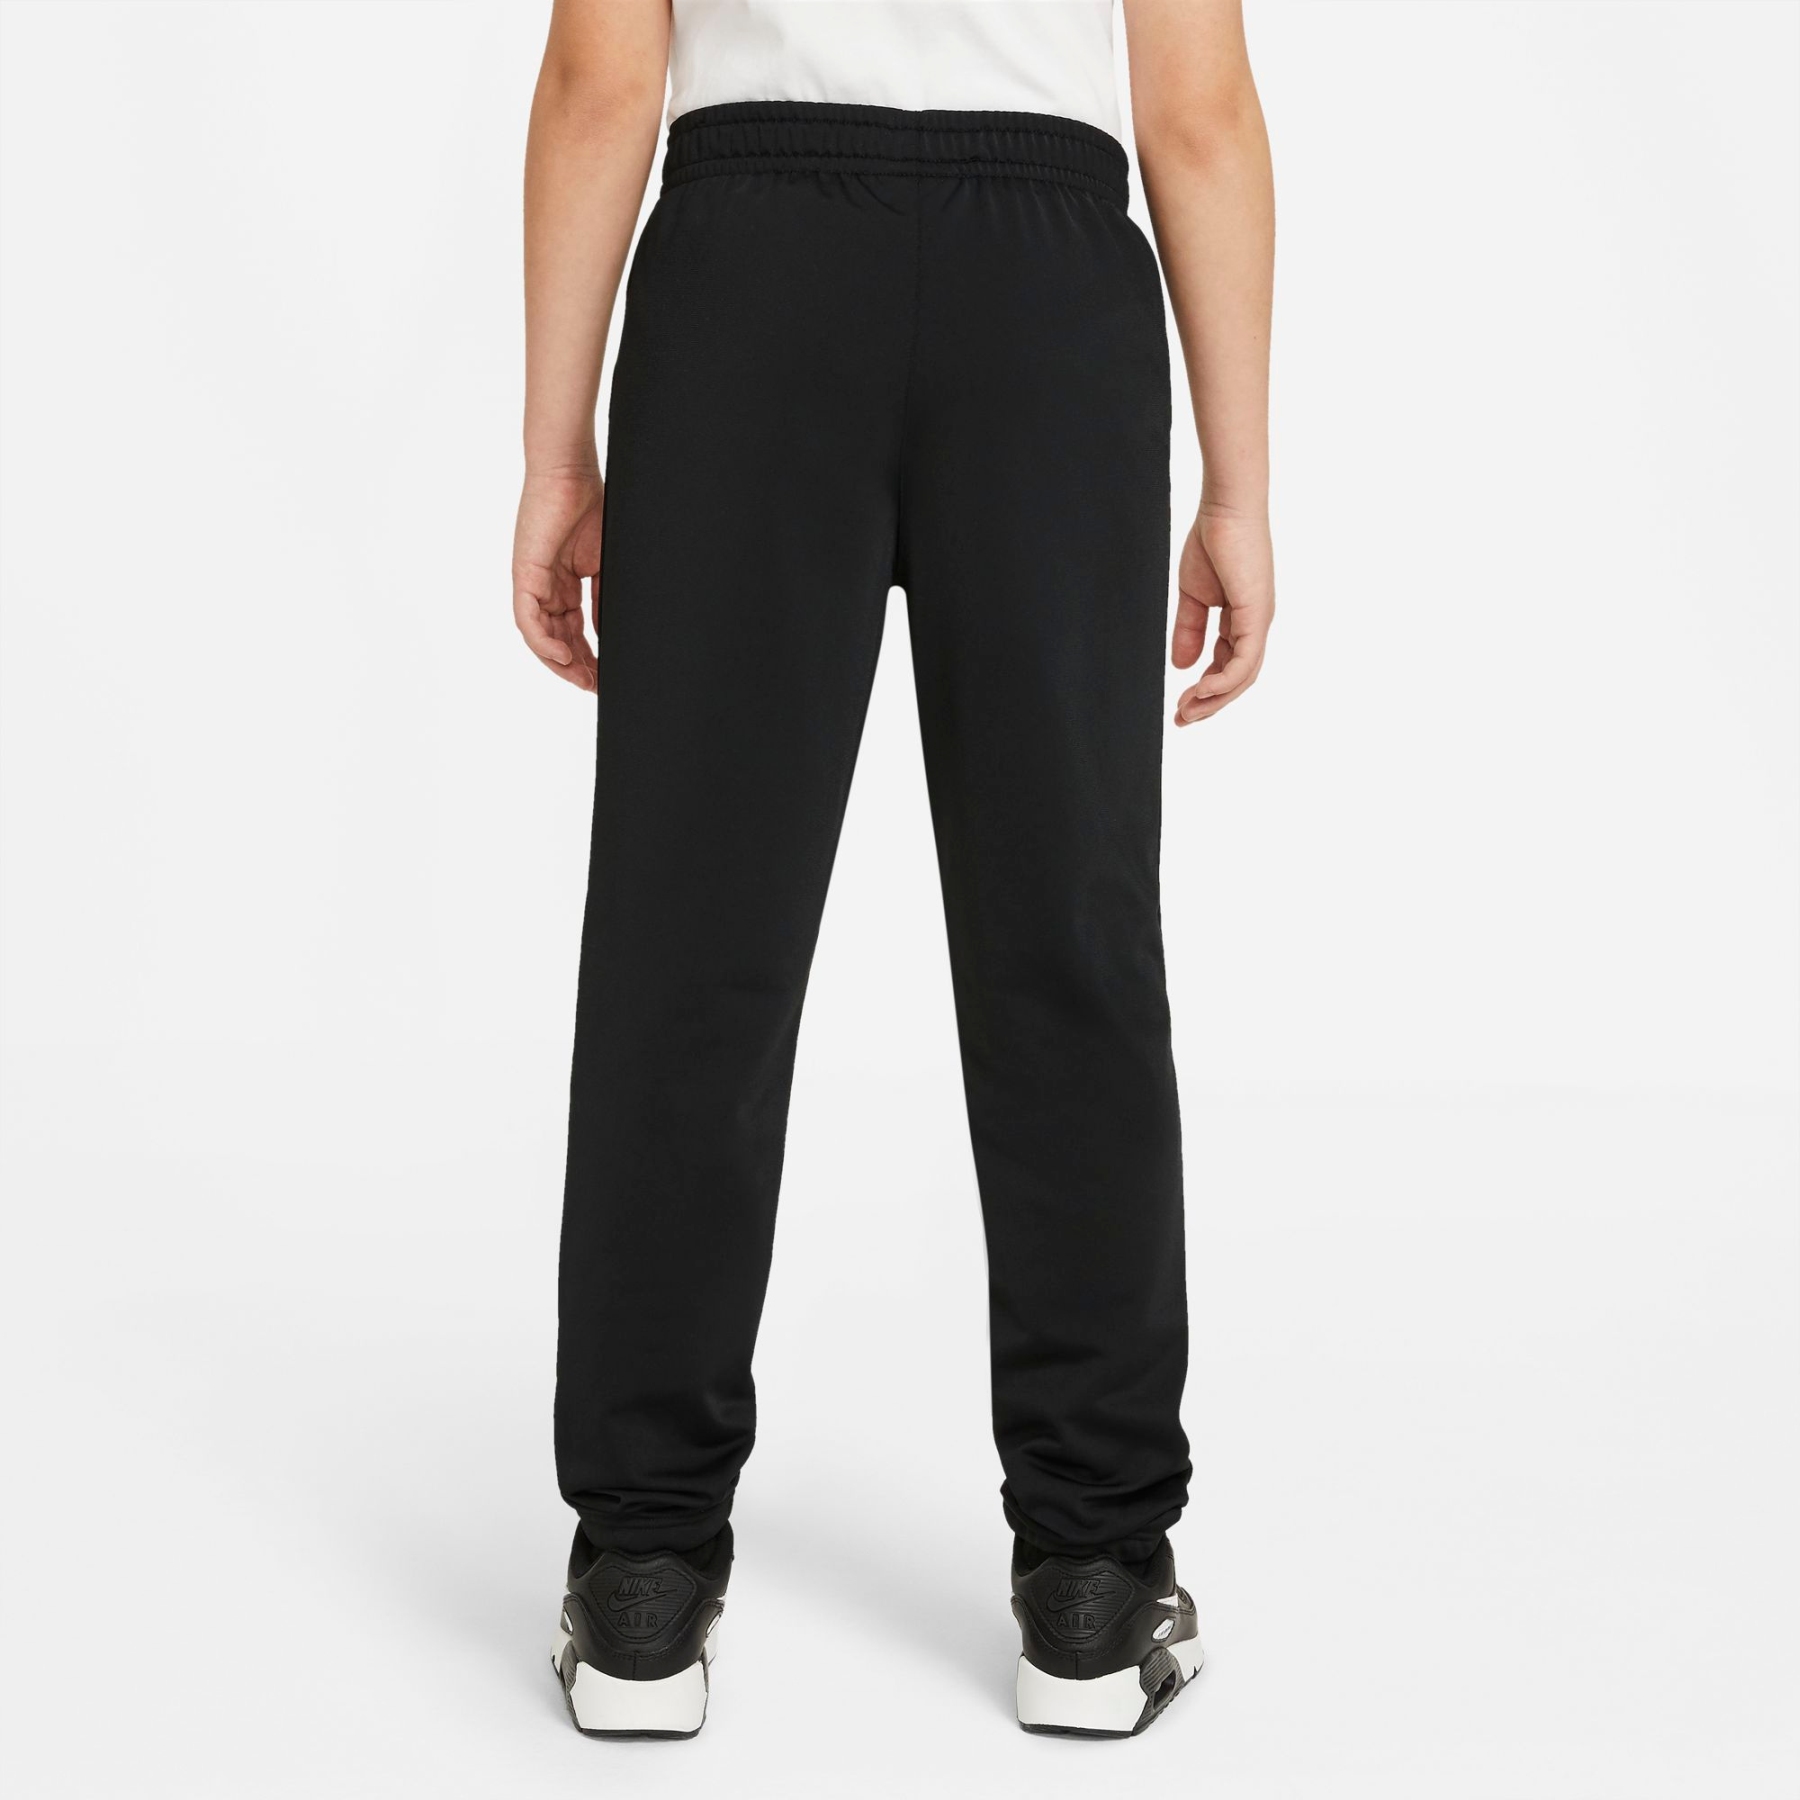 Nike Sportswear Trainingsanzug für ältere Kinder - schwarz/ schwarz/schwarz/weiss DH9661-010